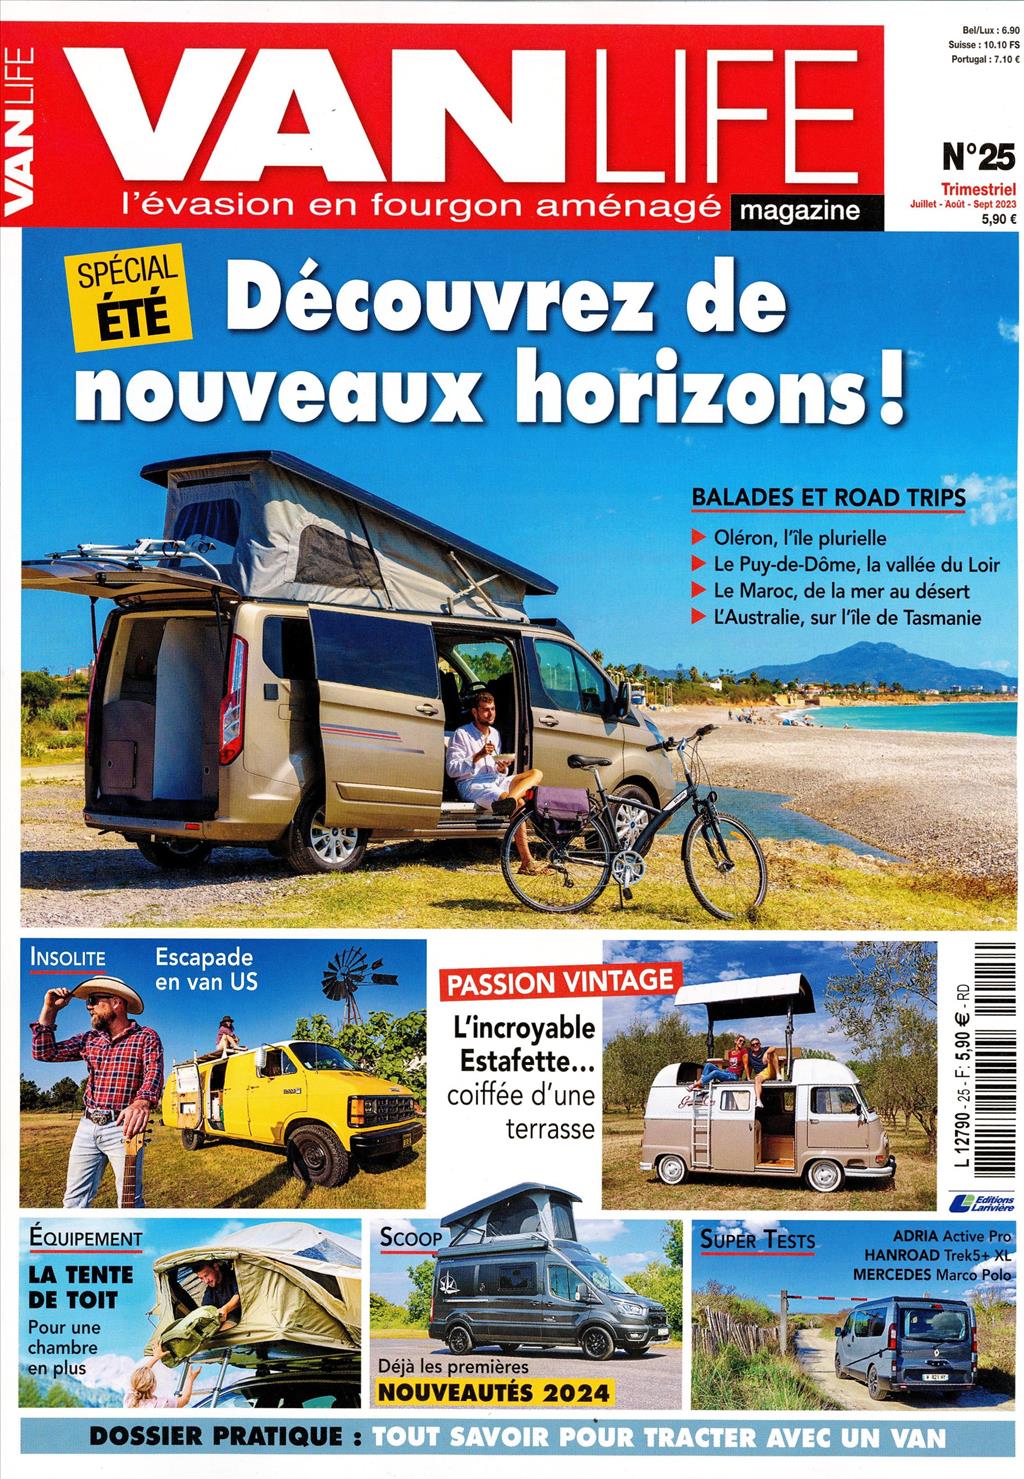 The Outlander : le van poids lourd à toit terrasse et écran de gaming,  signé Les Roues Libres - Van Life Magazine